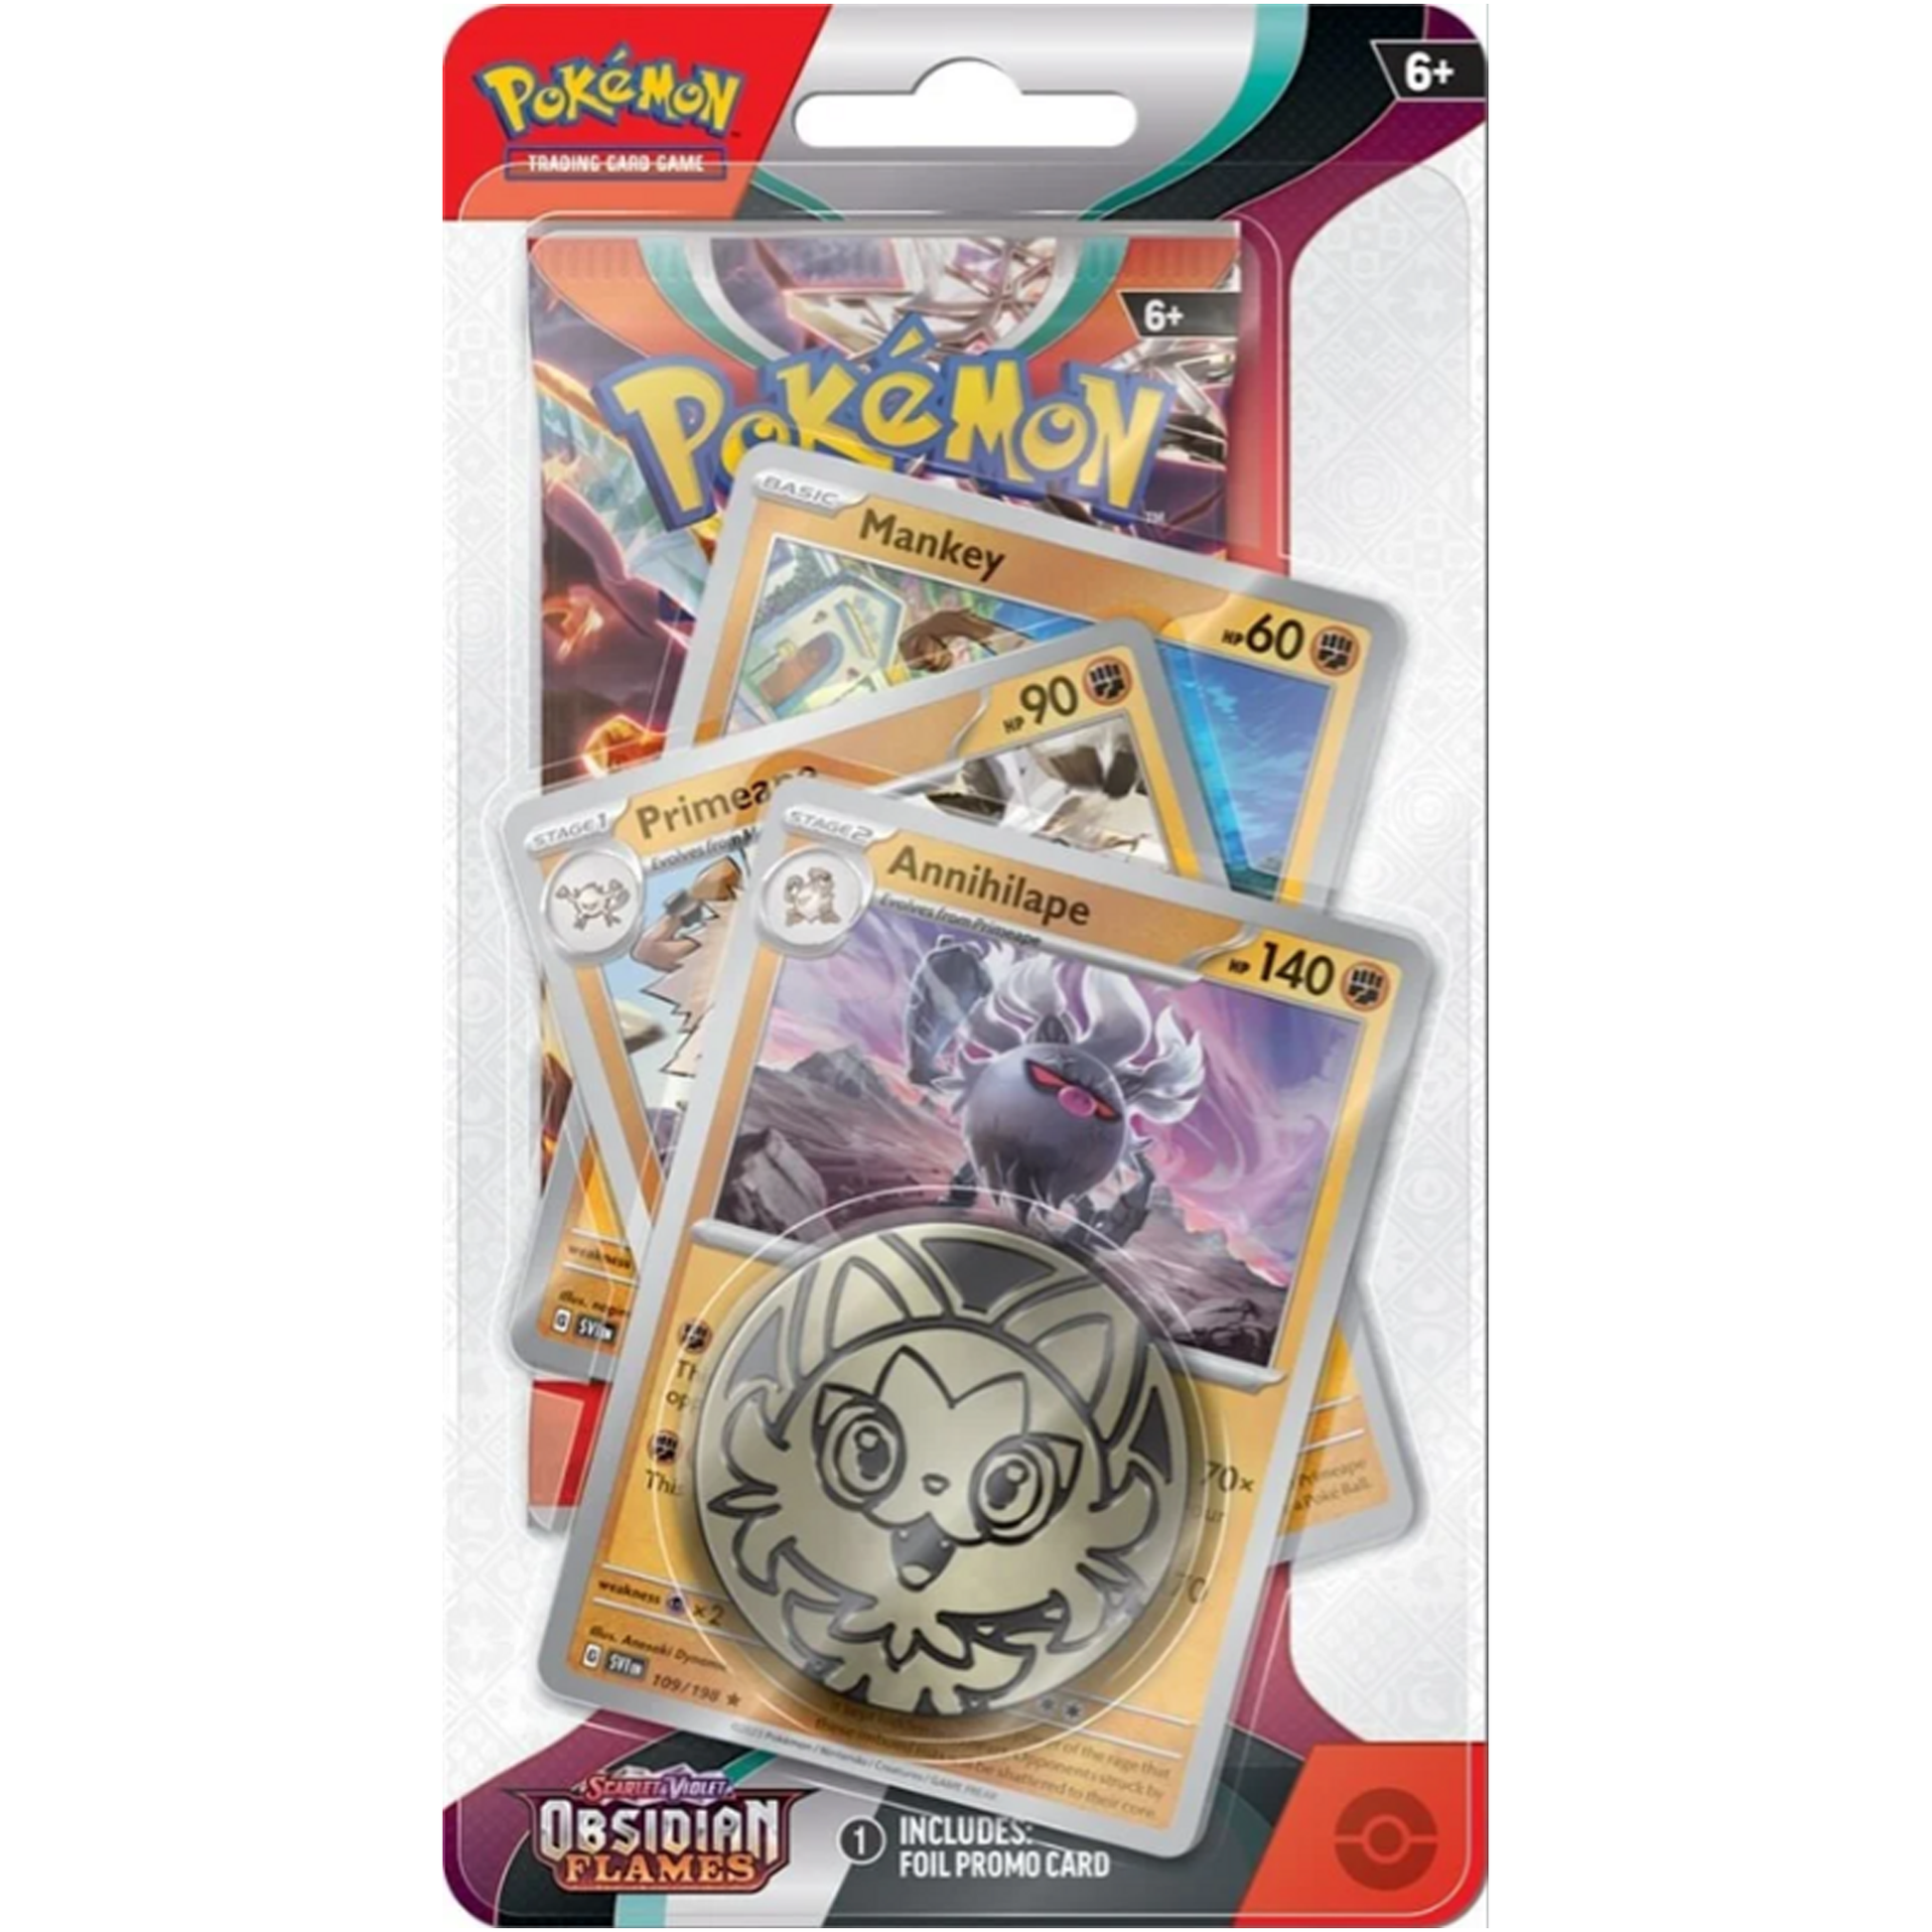 Pokémon Trading Card Game: Scarlet & Violet - 3 Pack Blister